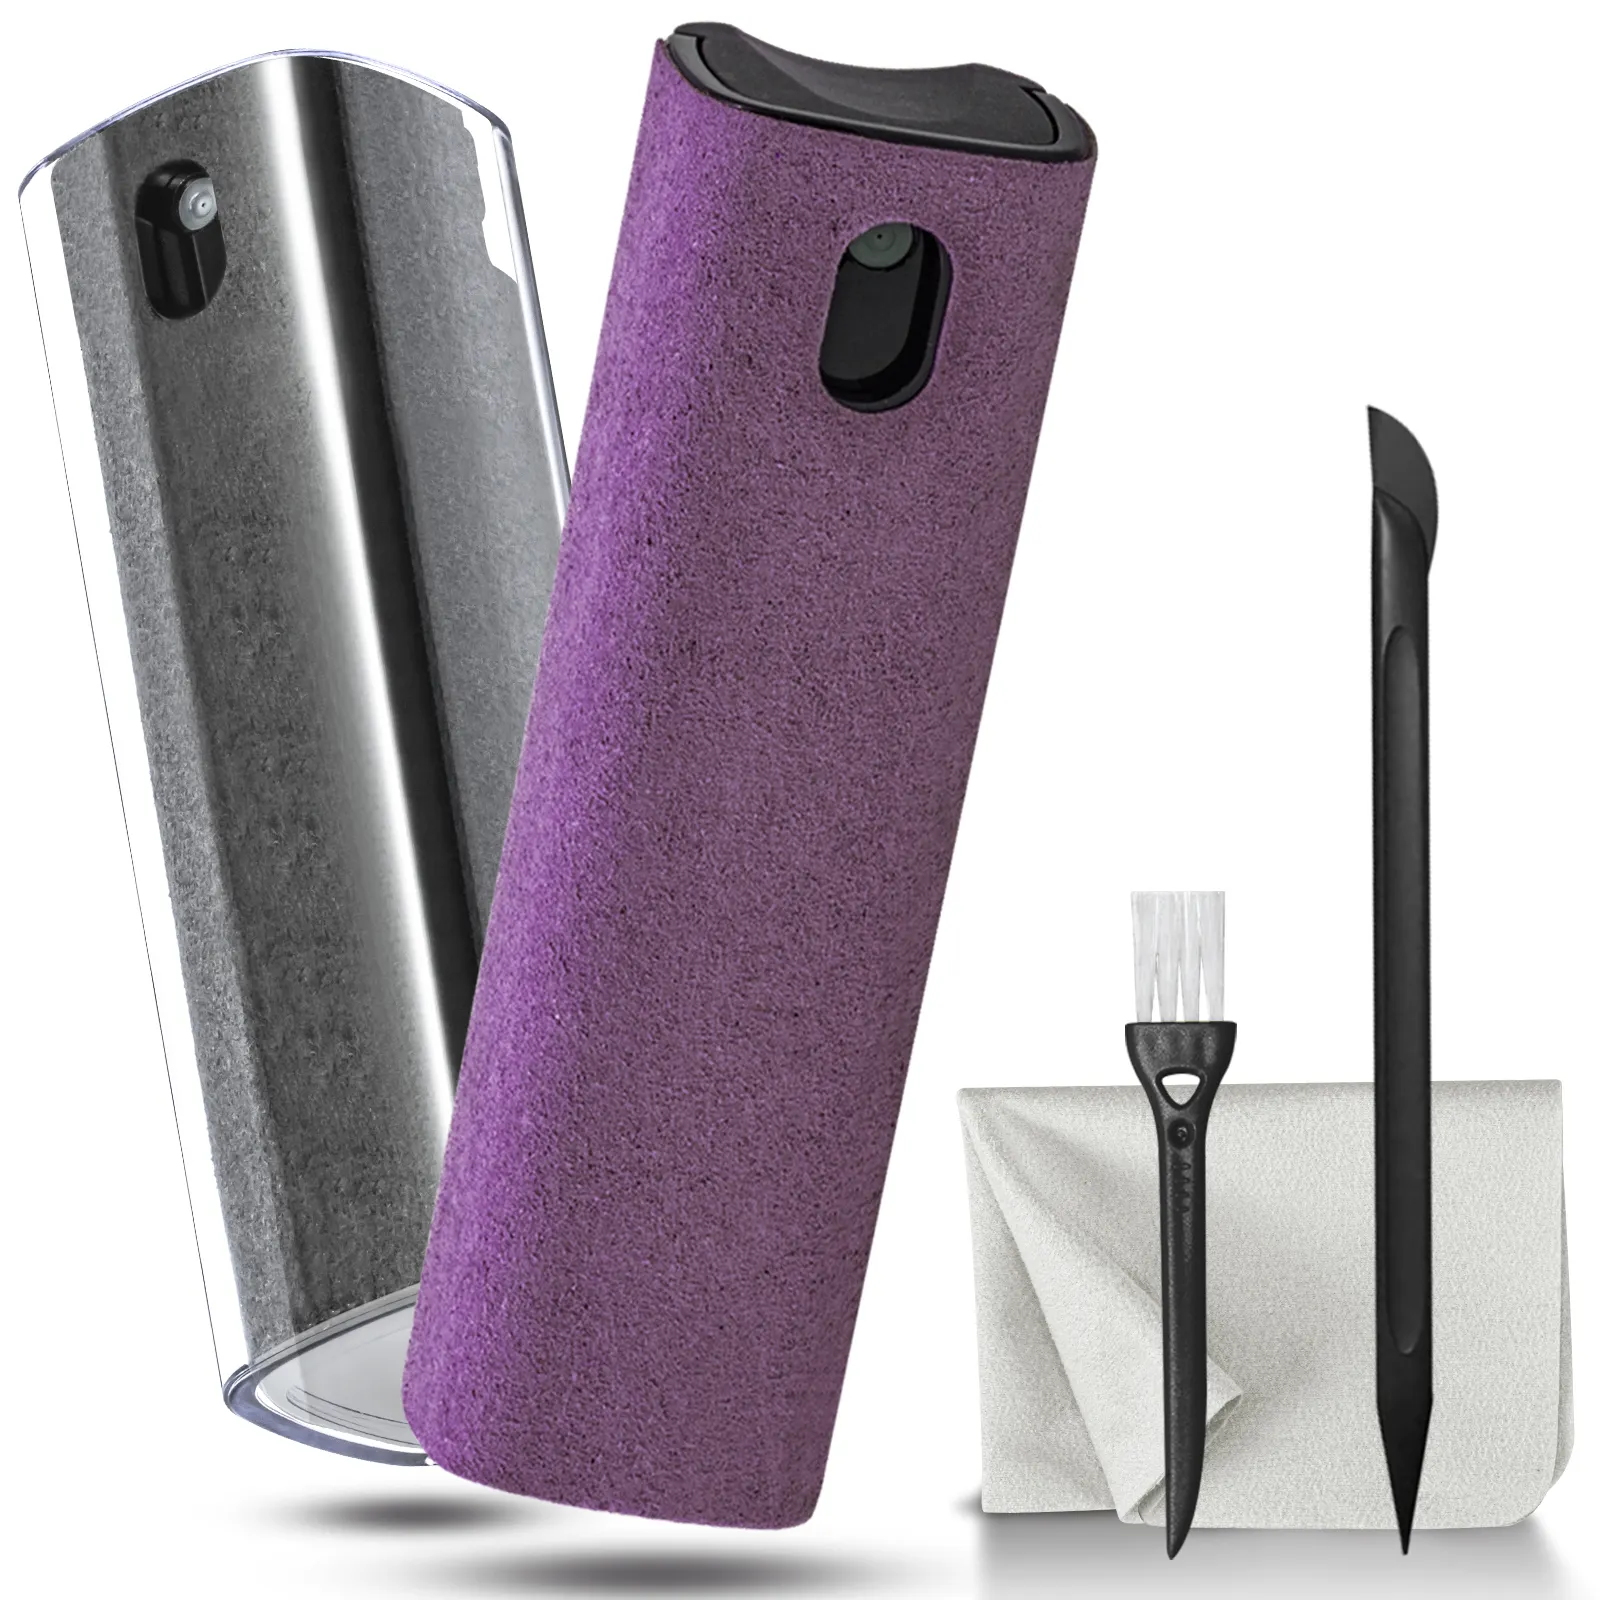 Semprotan pembersih layar ponsel, Kit pembersih layar ponsel 2 dalam 1 dengan kain Microfiber